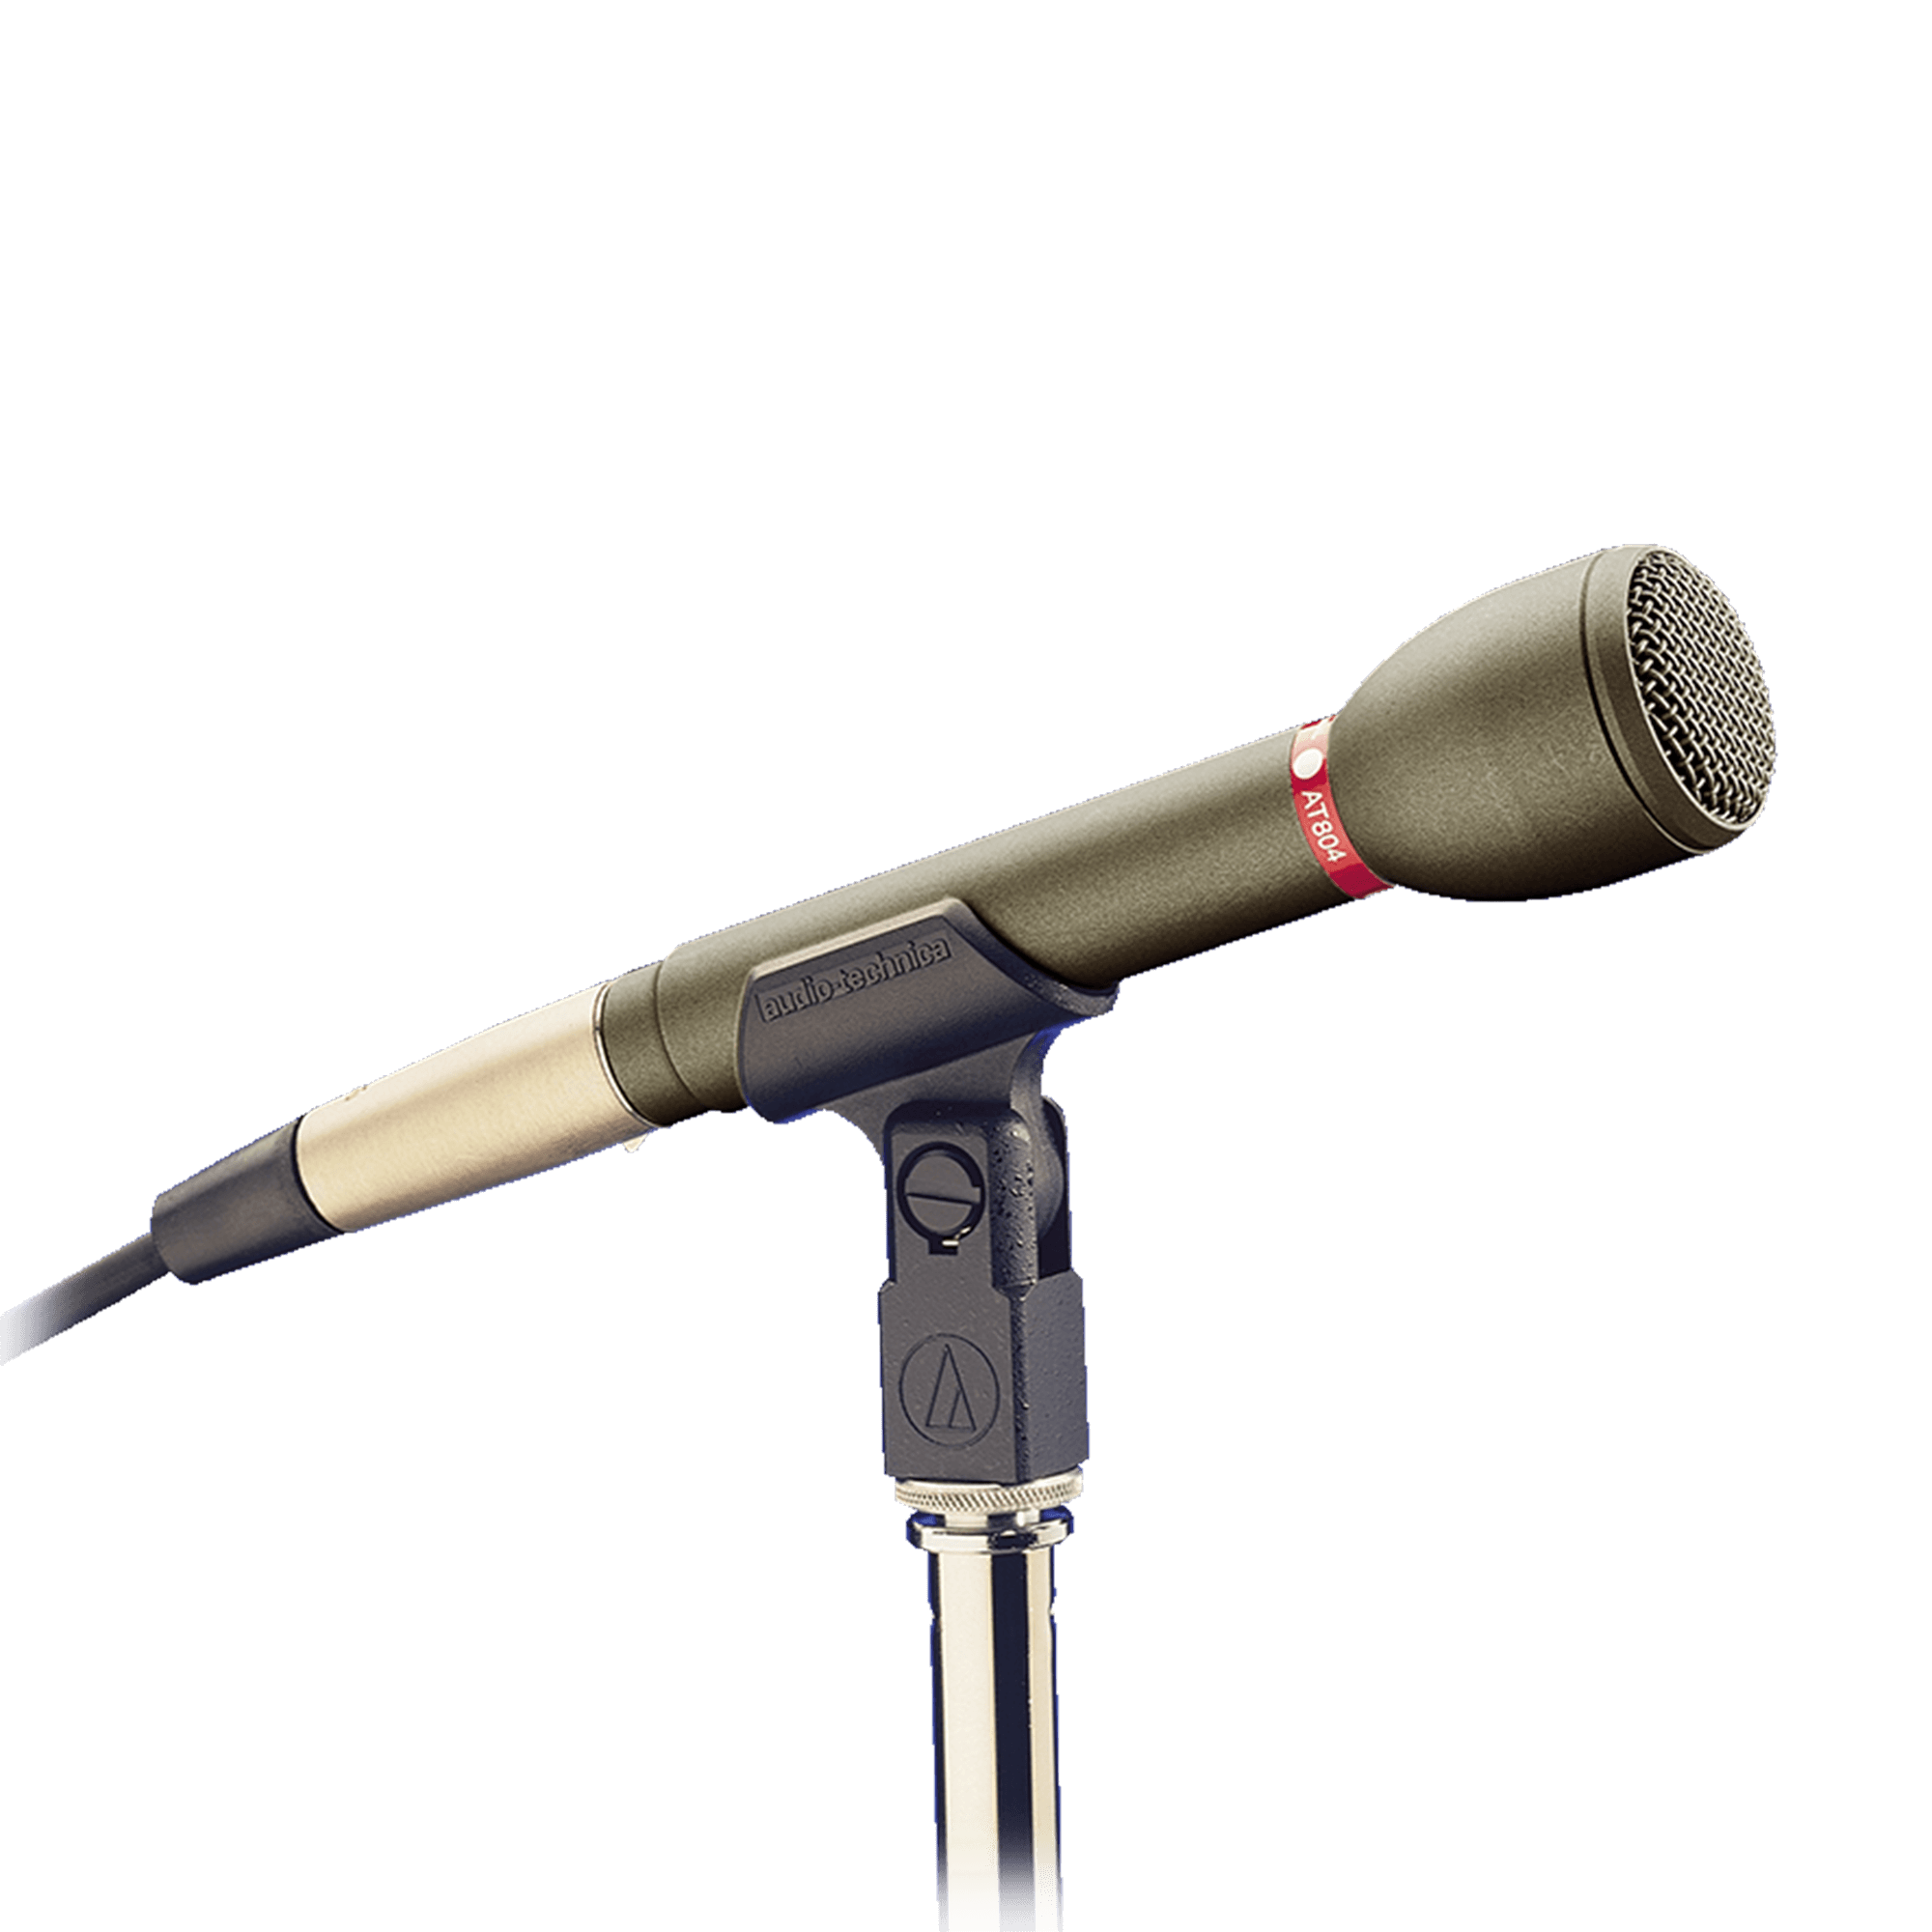 omnidirectional microphone